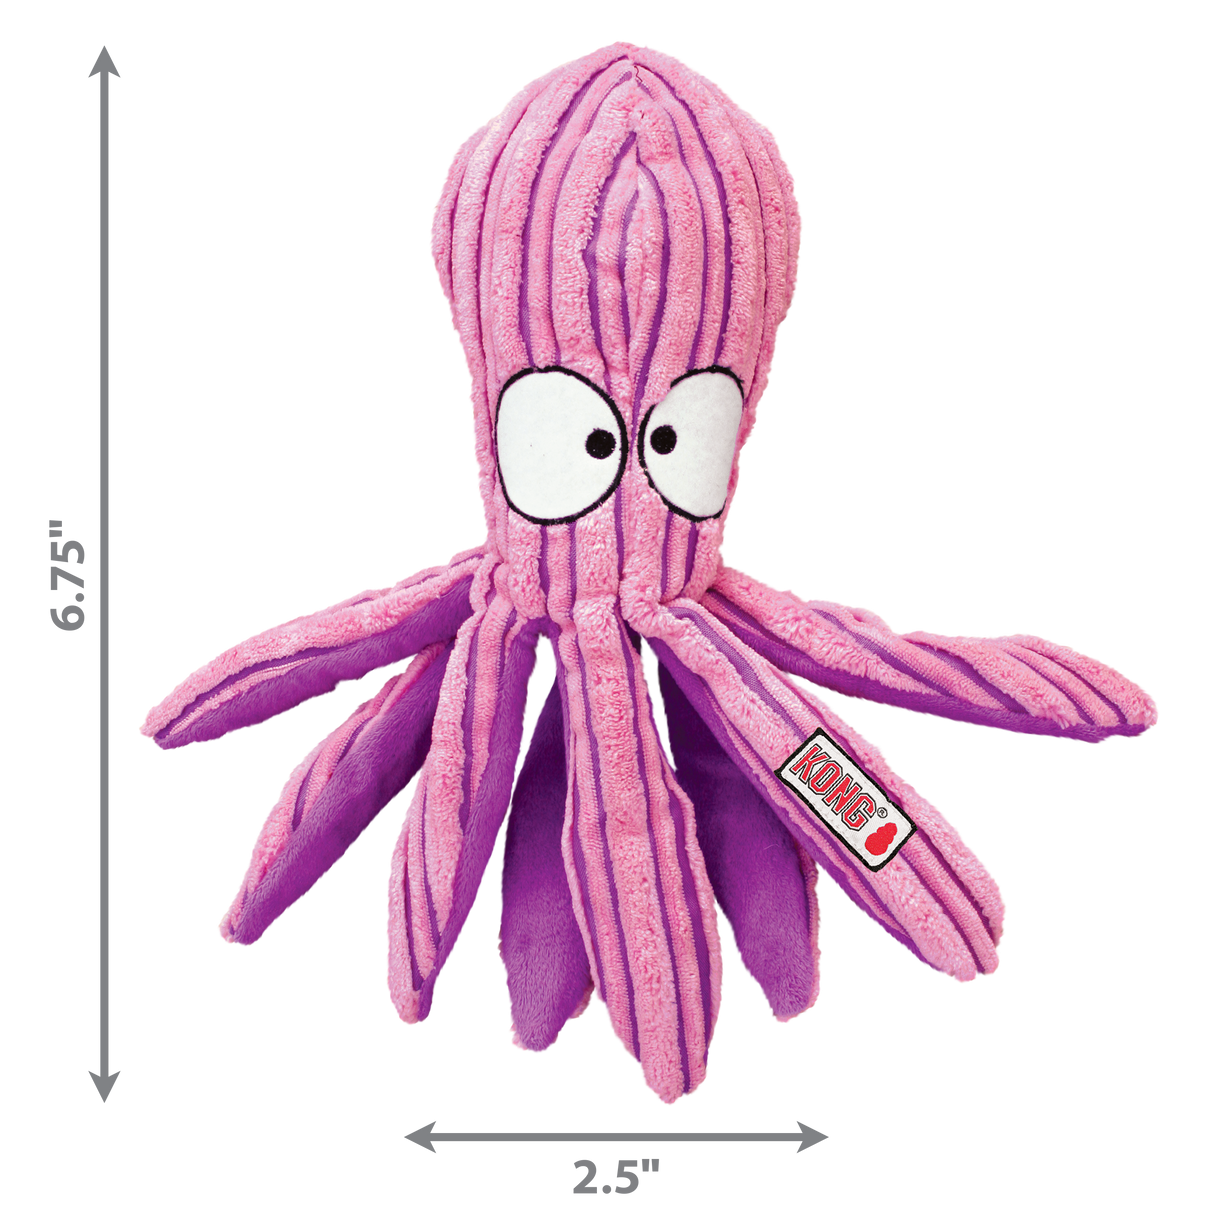 KONG Cuteseas #style_octopus